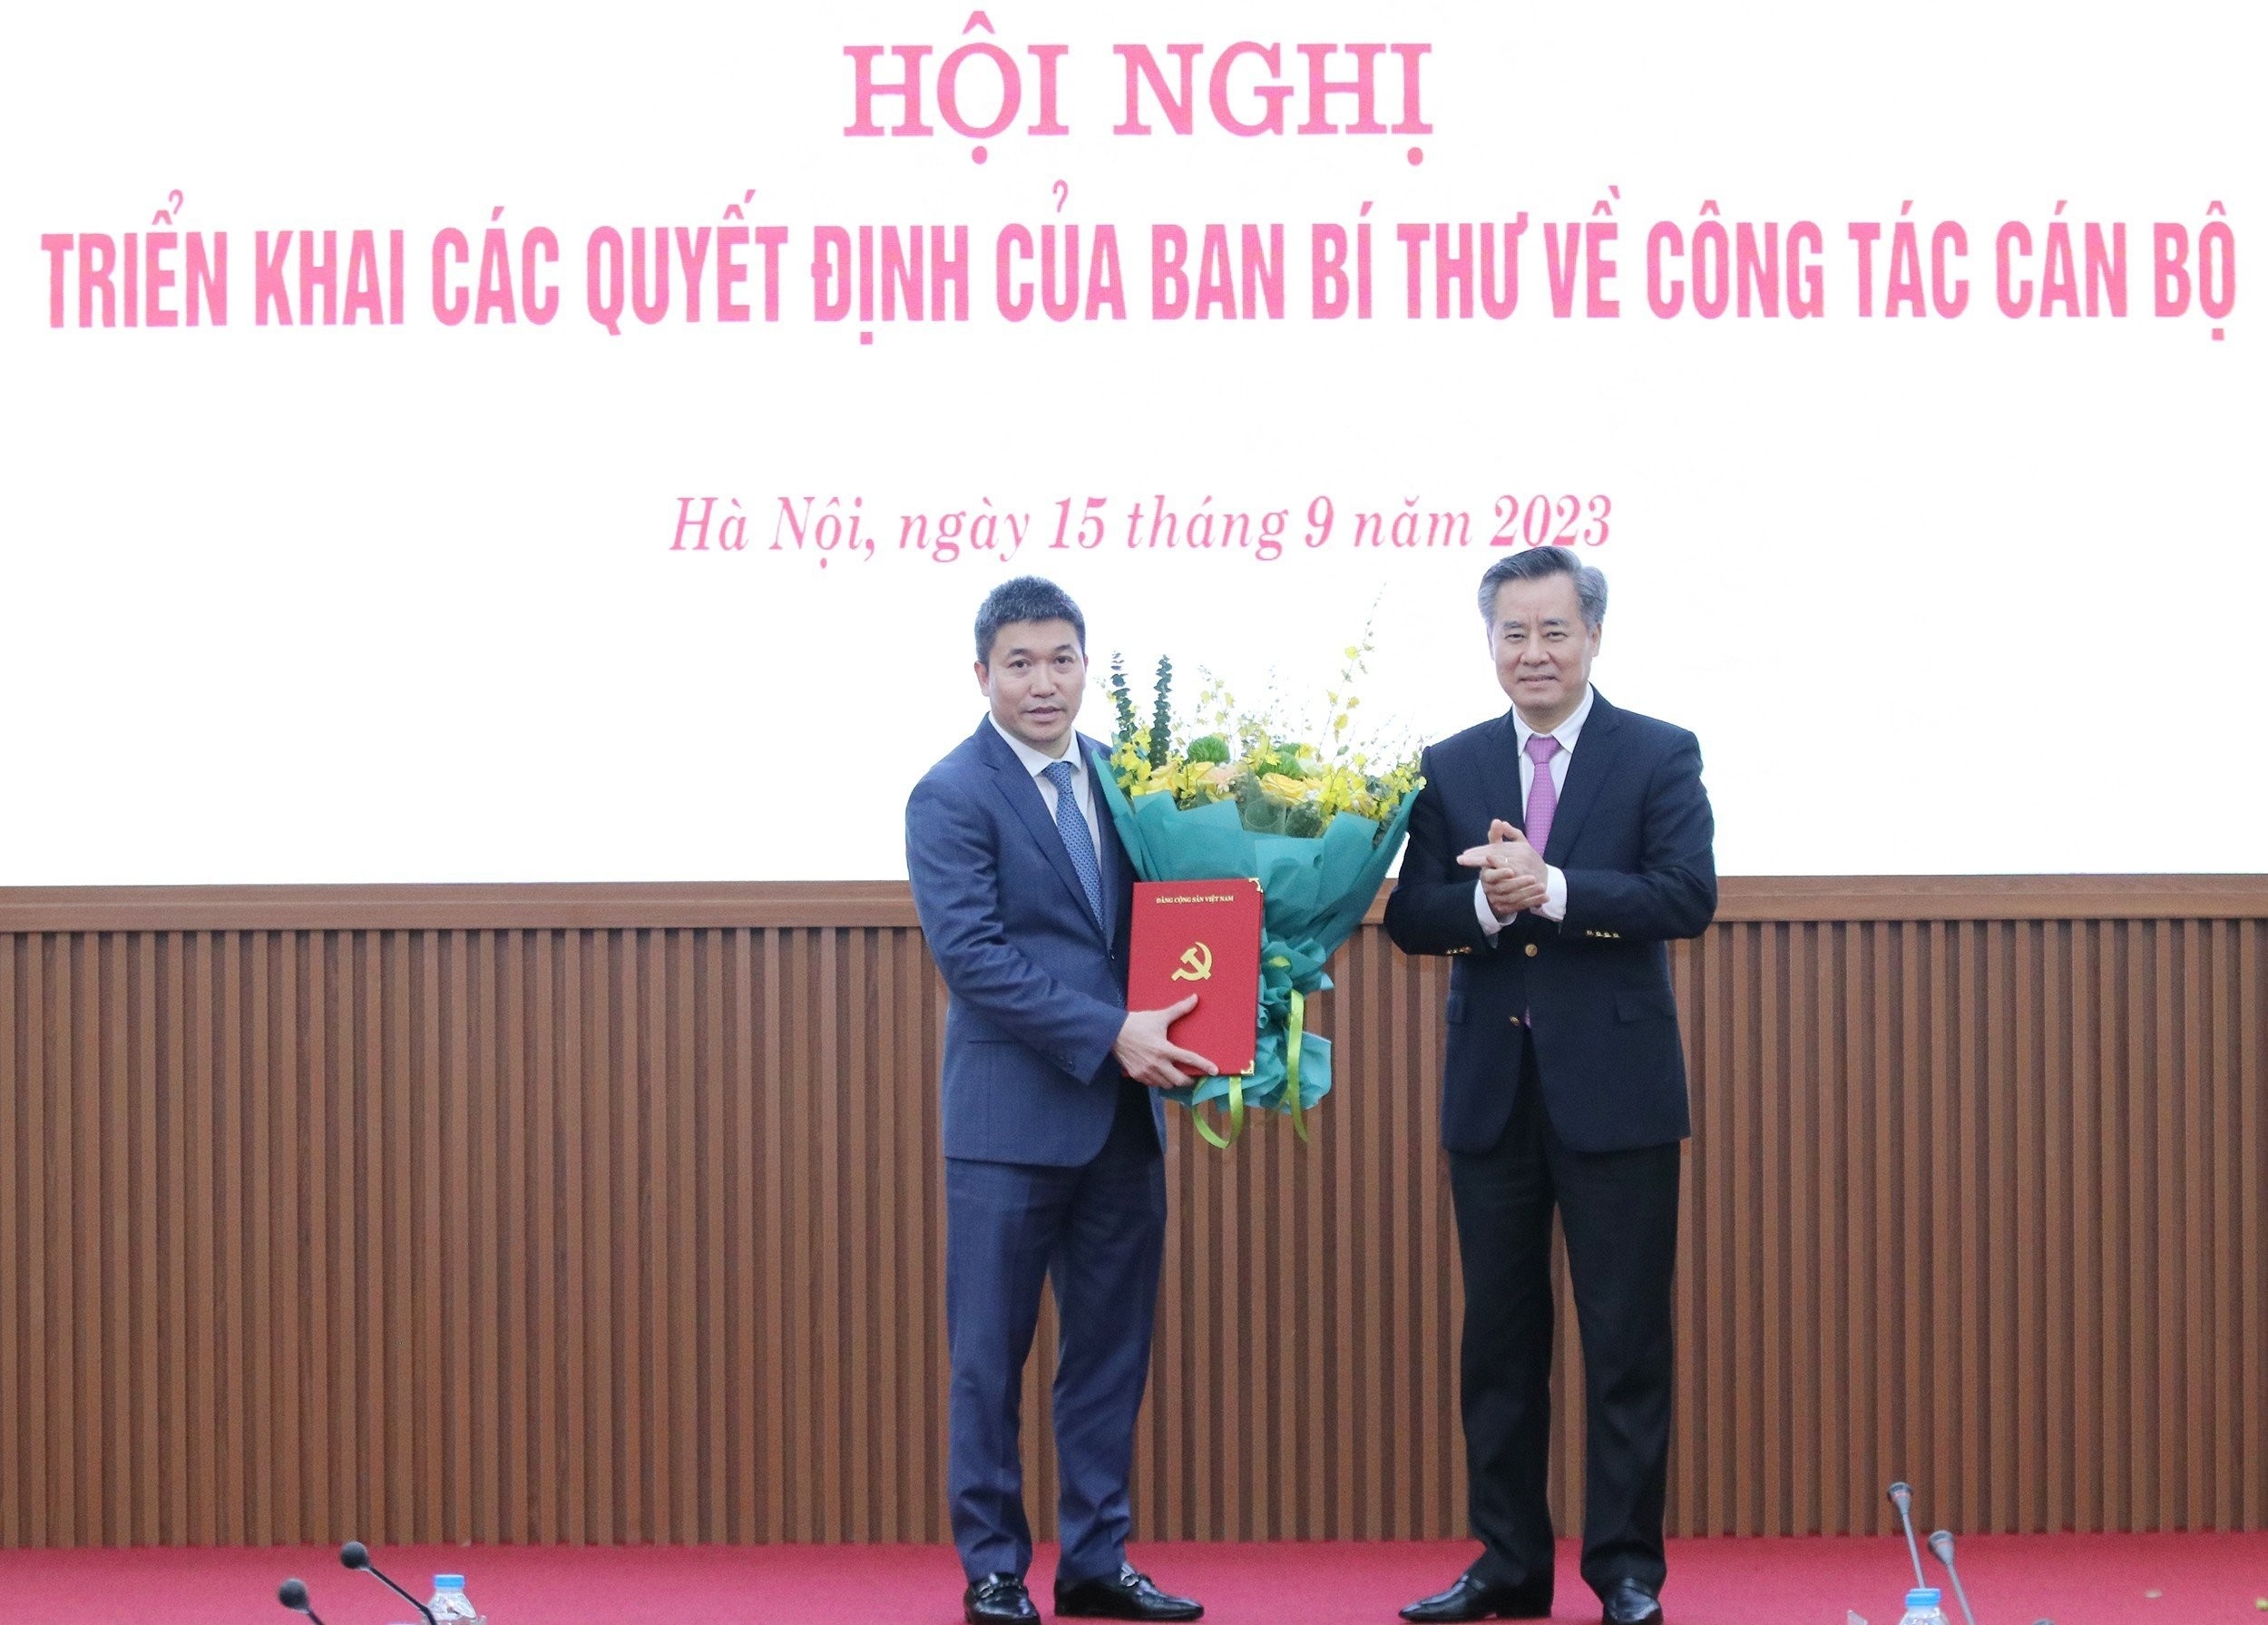 越共中央组织部副部长阮光阳同志向潘英山同志转交《决定》并送祝贺花。